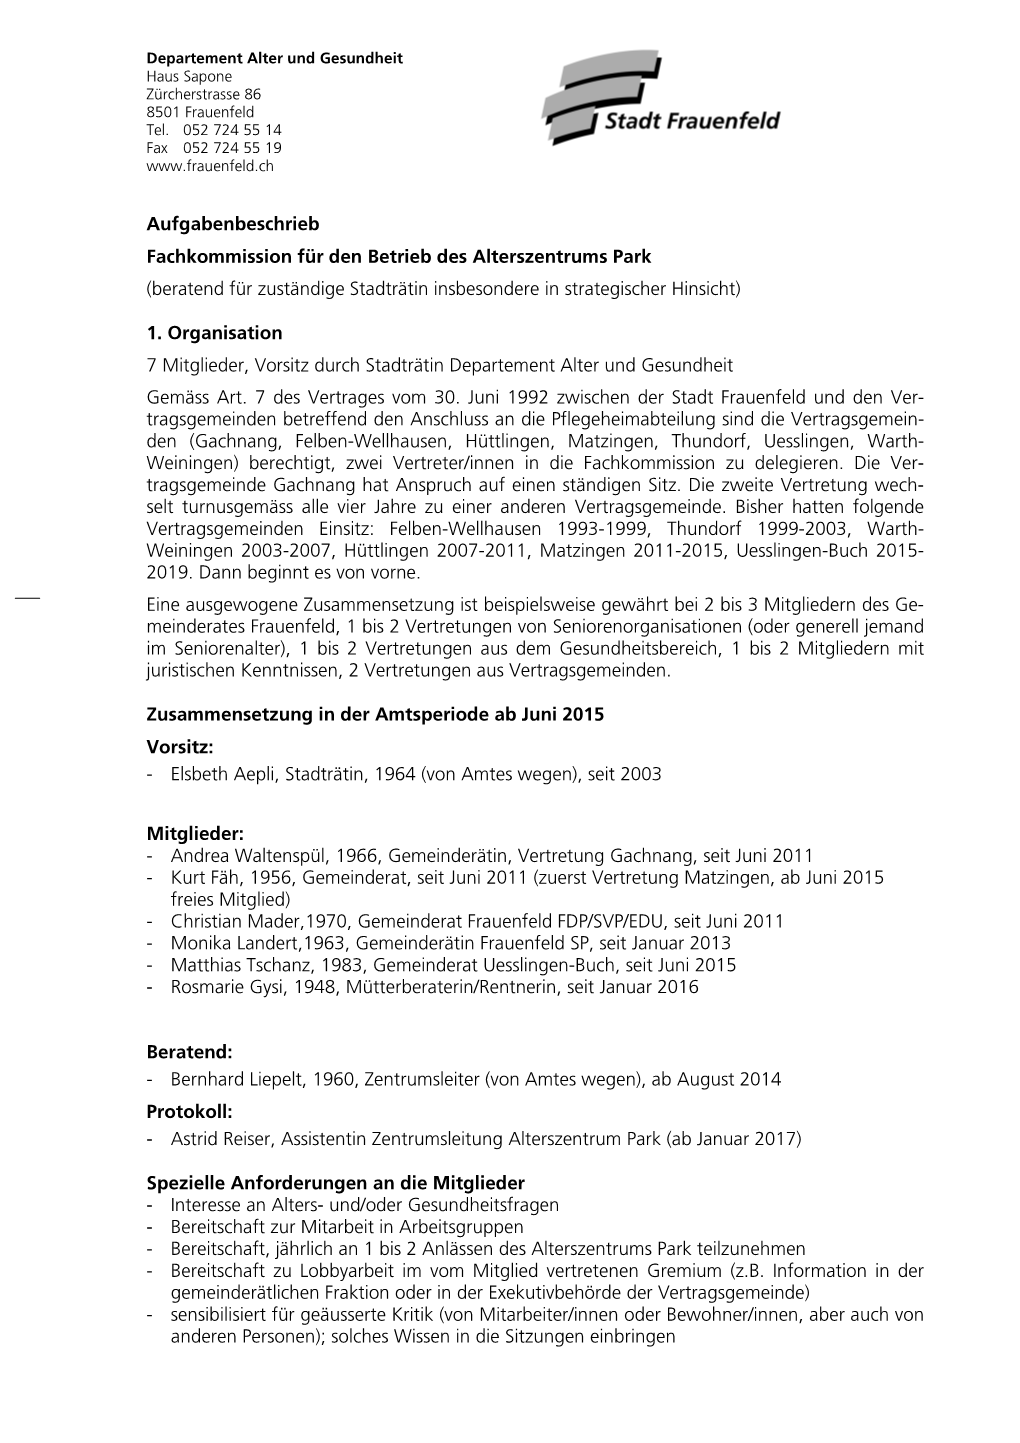 Fachkommission Für Den Betrieb Des Alterszentrums Park (Beratend Für Zuständige Stadträtin Insbesondere in Strategischer Hinsicht)